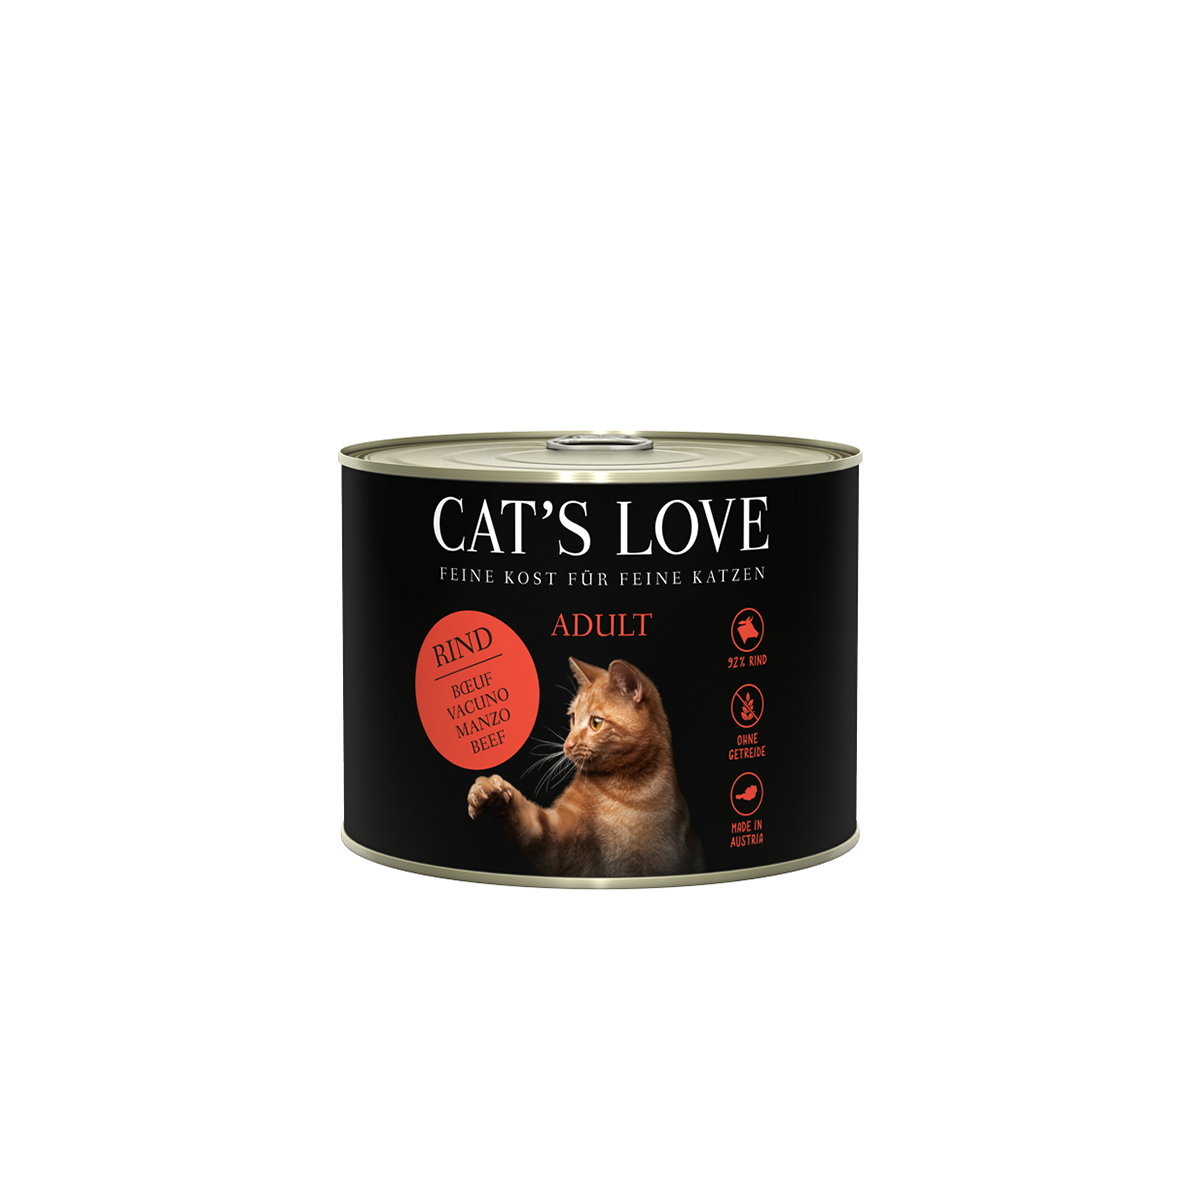 Cat's Love konzerva, čisté hovězí maso, světlicový olej a pampeliška